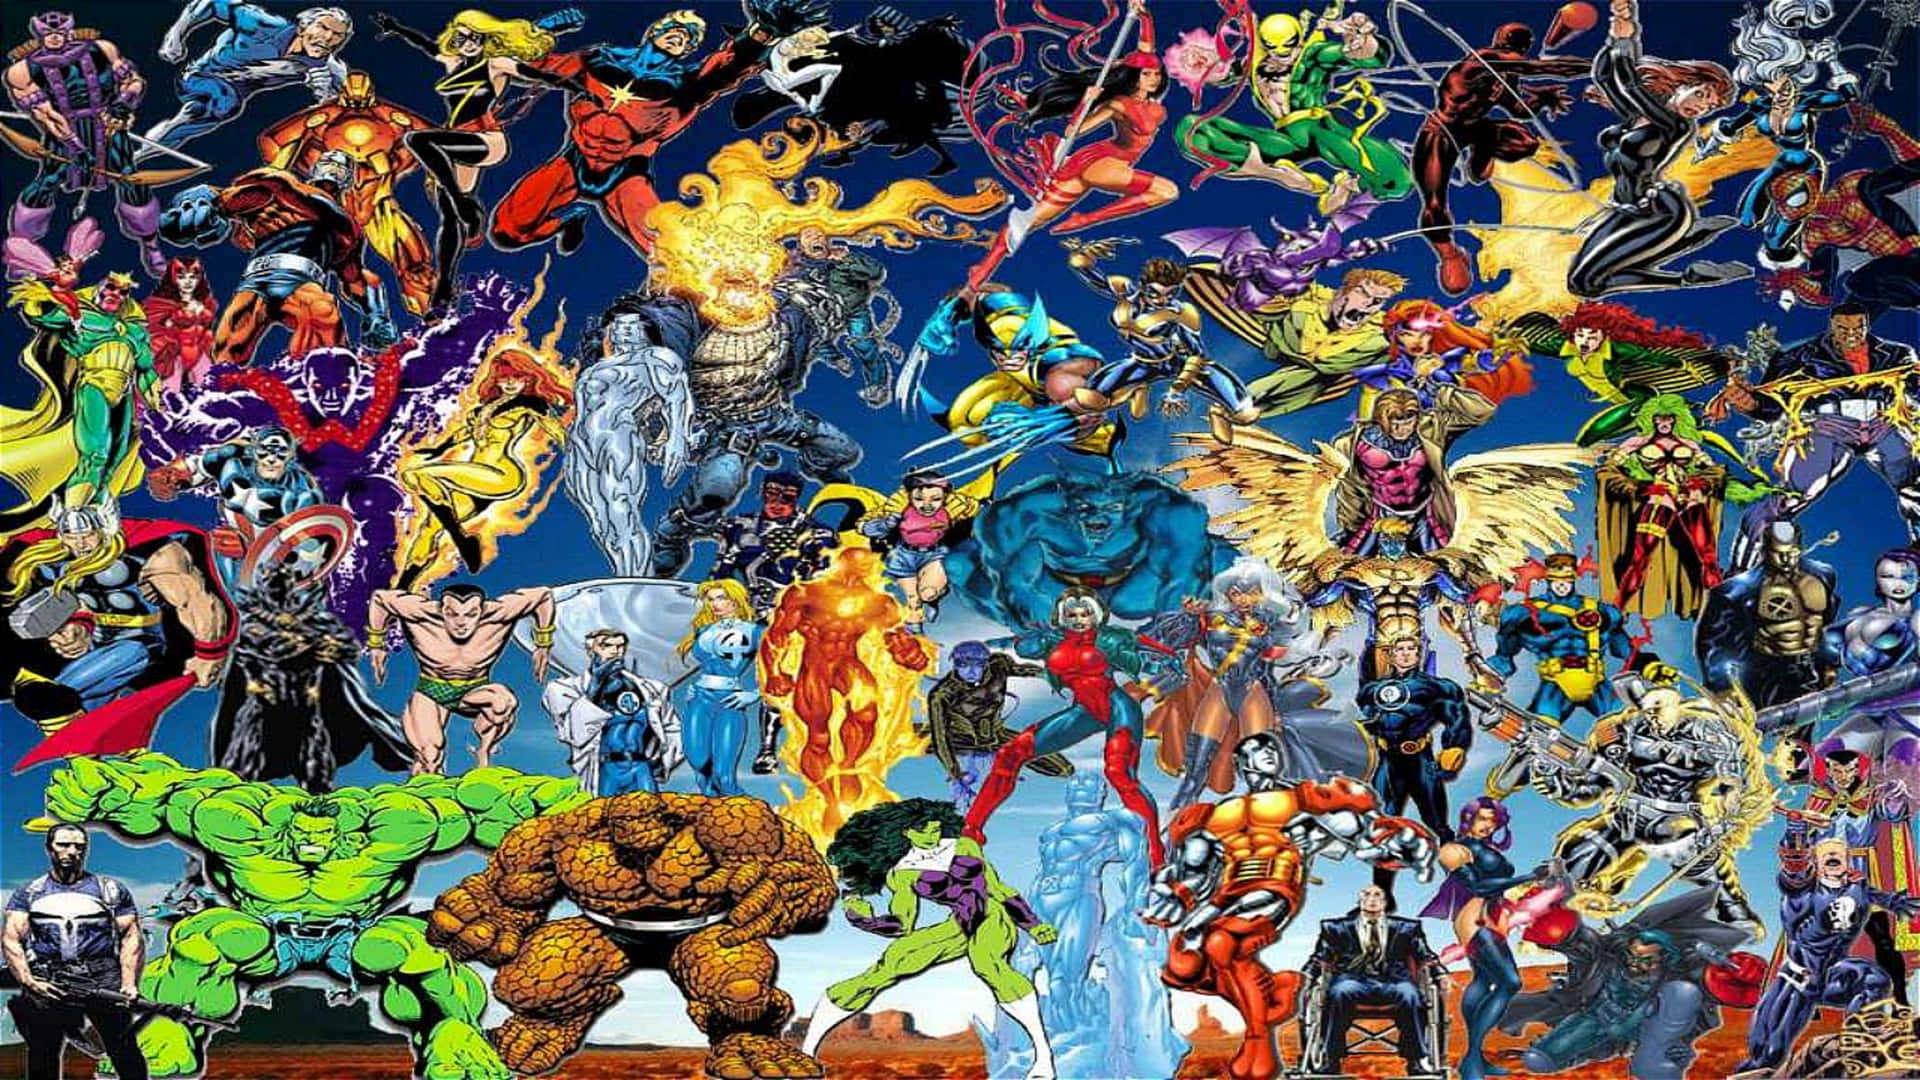 Classic Heroes Of Marvel Comics 2560x1440 Wallpaper